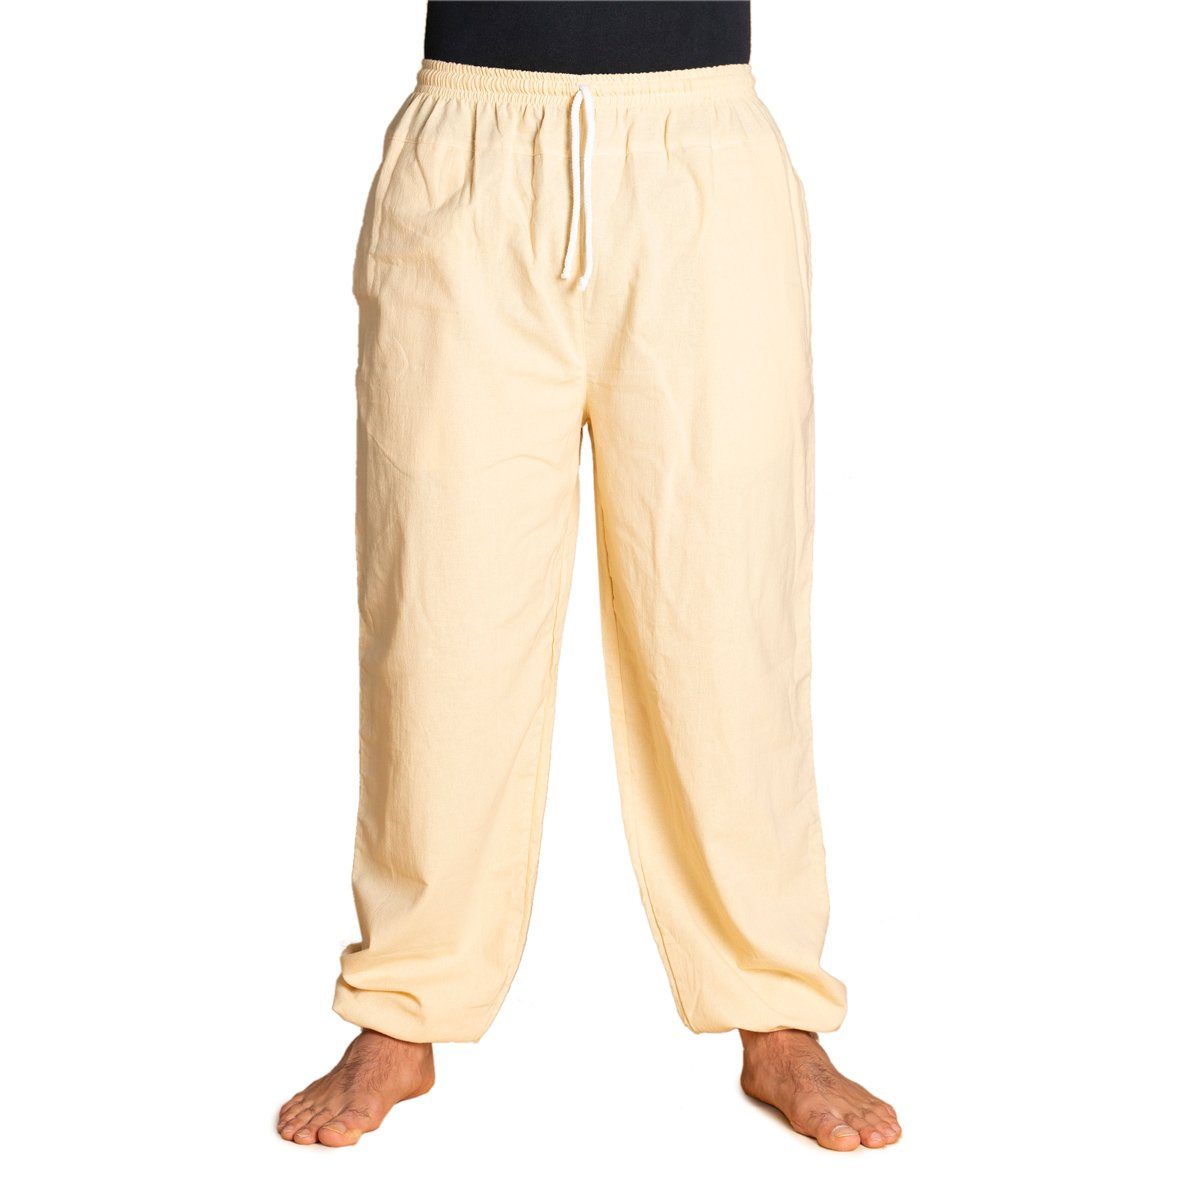 PANASIAM Wellnesshose E-Pants leichte Unisex Bundhose aus weicher Baumwolle für Damen und Herren Freizeithose mit Tunnelzug Relaxhose bequeme Sommerhose Beige | Weite Hosen